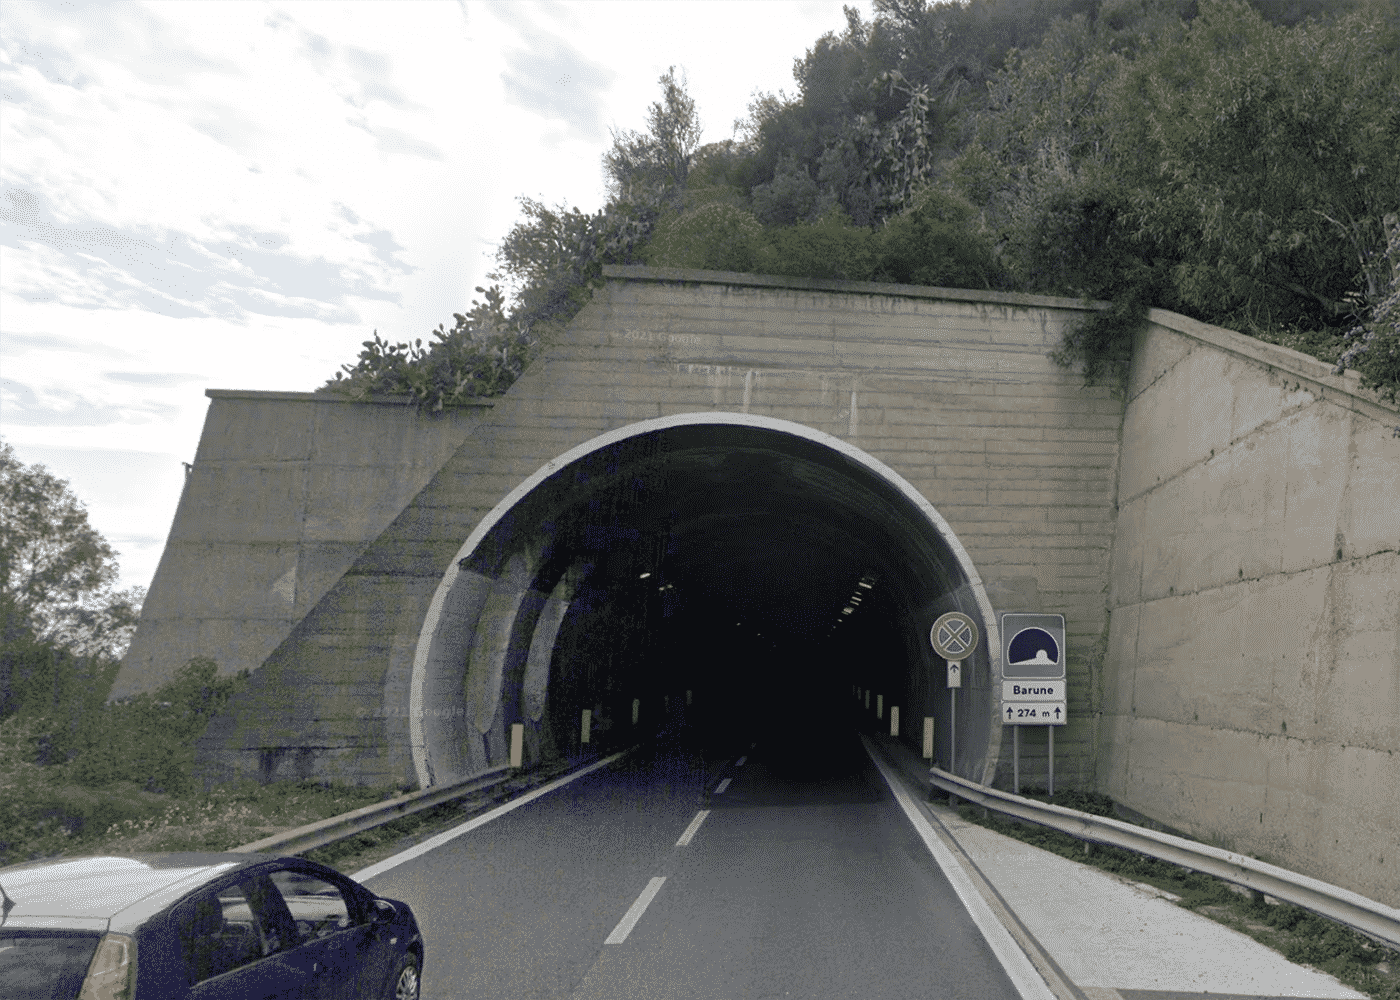 Autostrada A18 Messina-Catania, rimosso doppio senso di circolazione: “Si torna a viaggiare regolarmente”